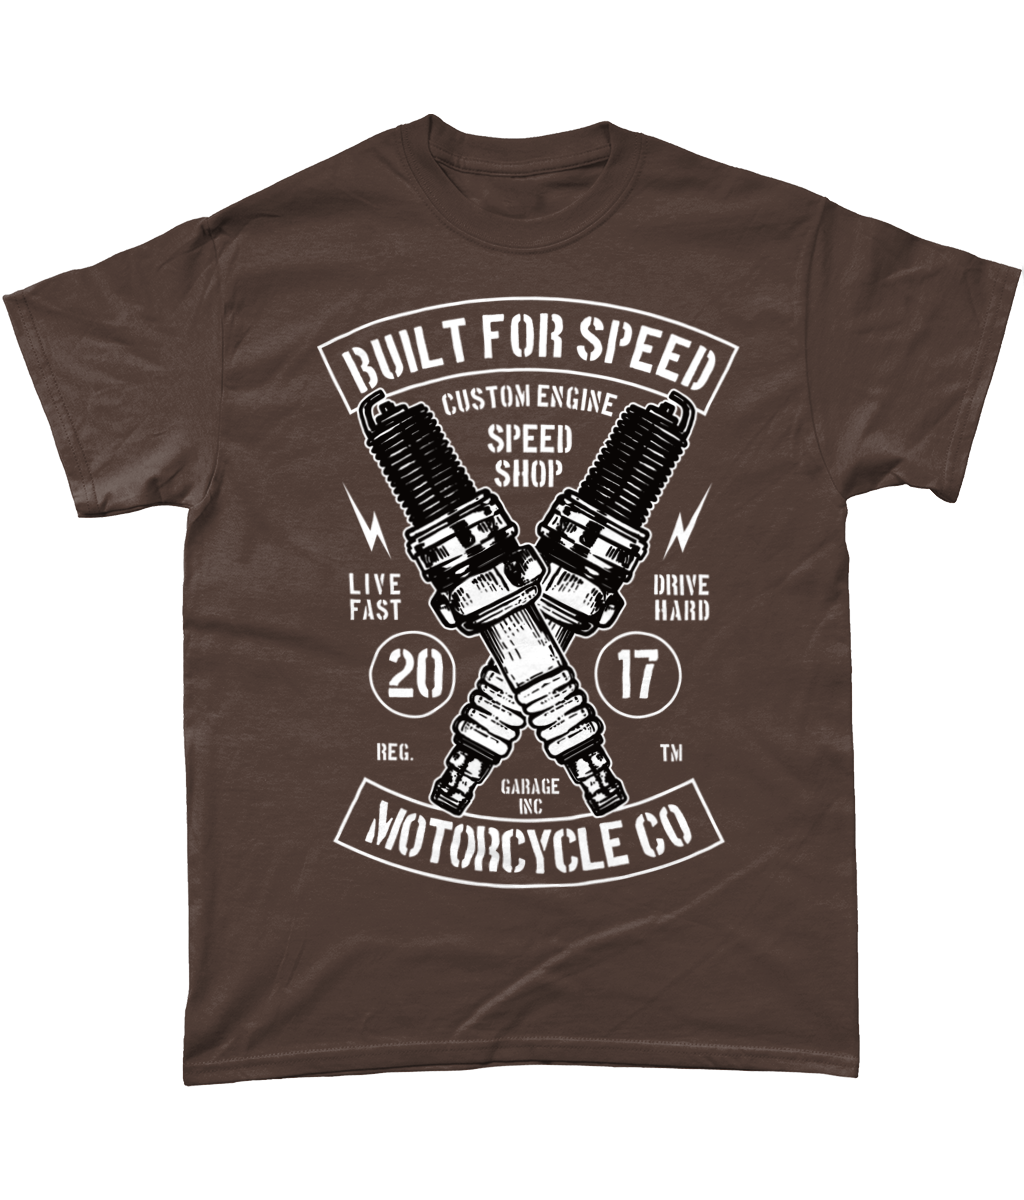 Built For Speed – Gildan Heavy Cotton T-shirt